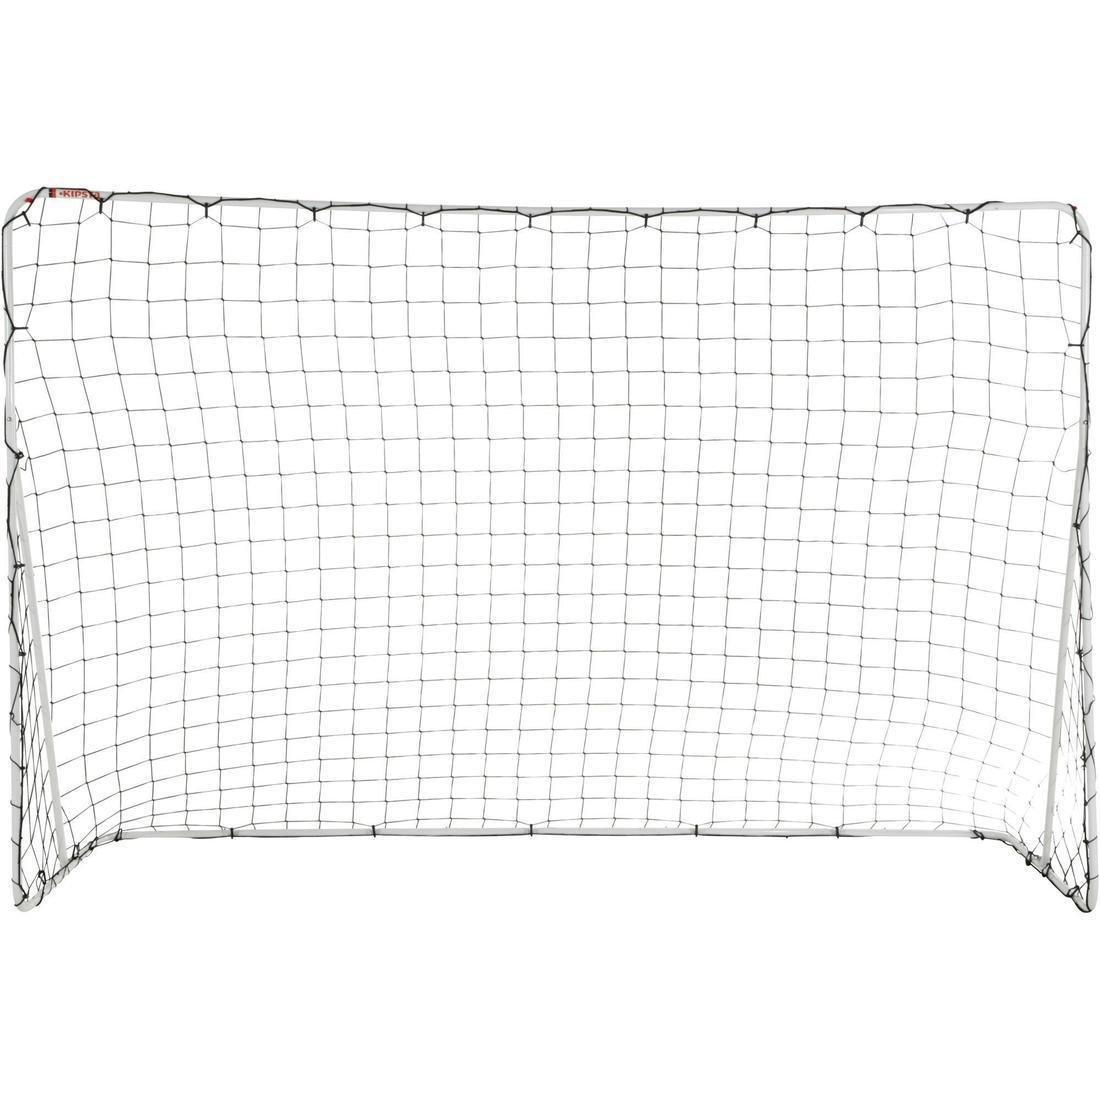 KIPSTA - Football Goal Sg 100 Size L, White